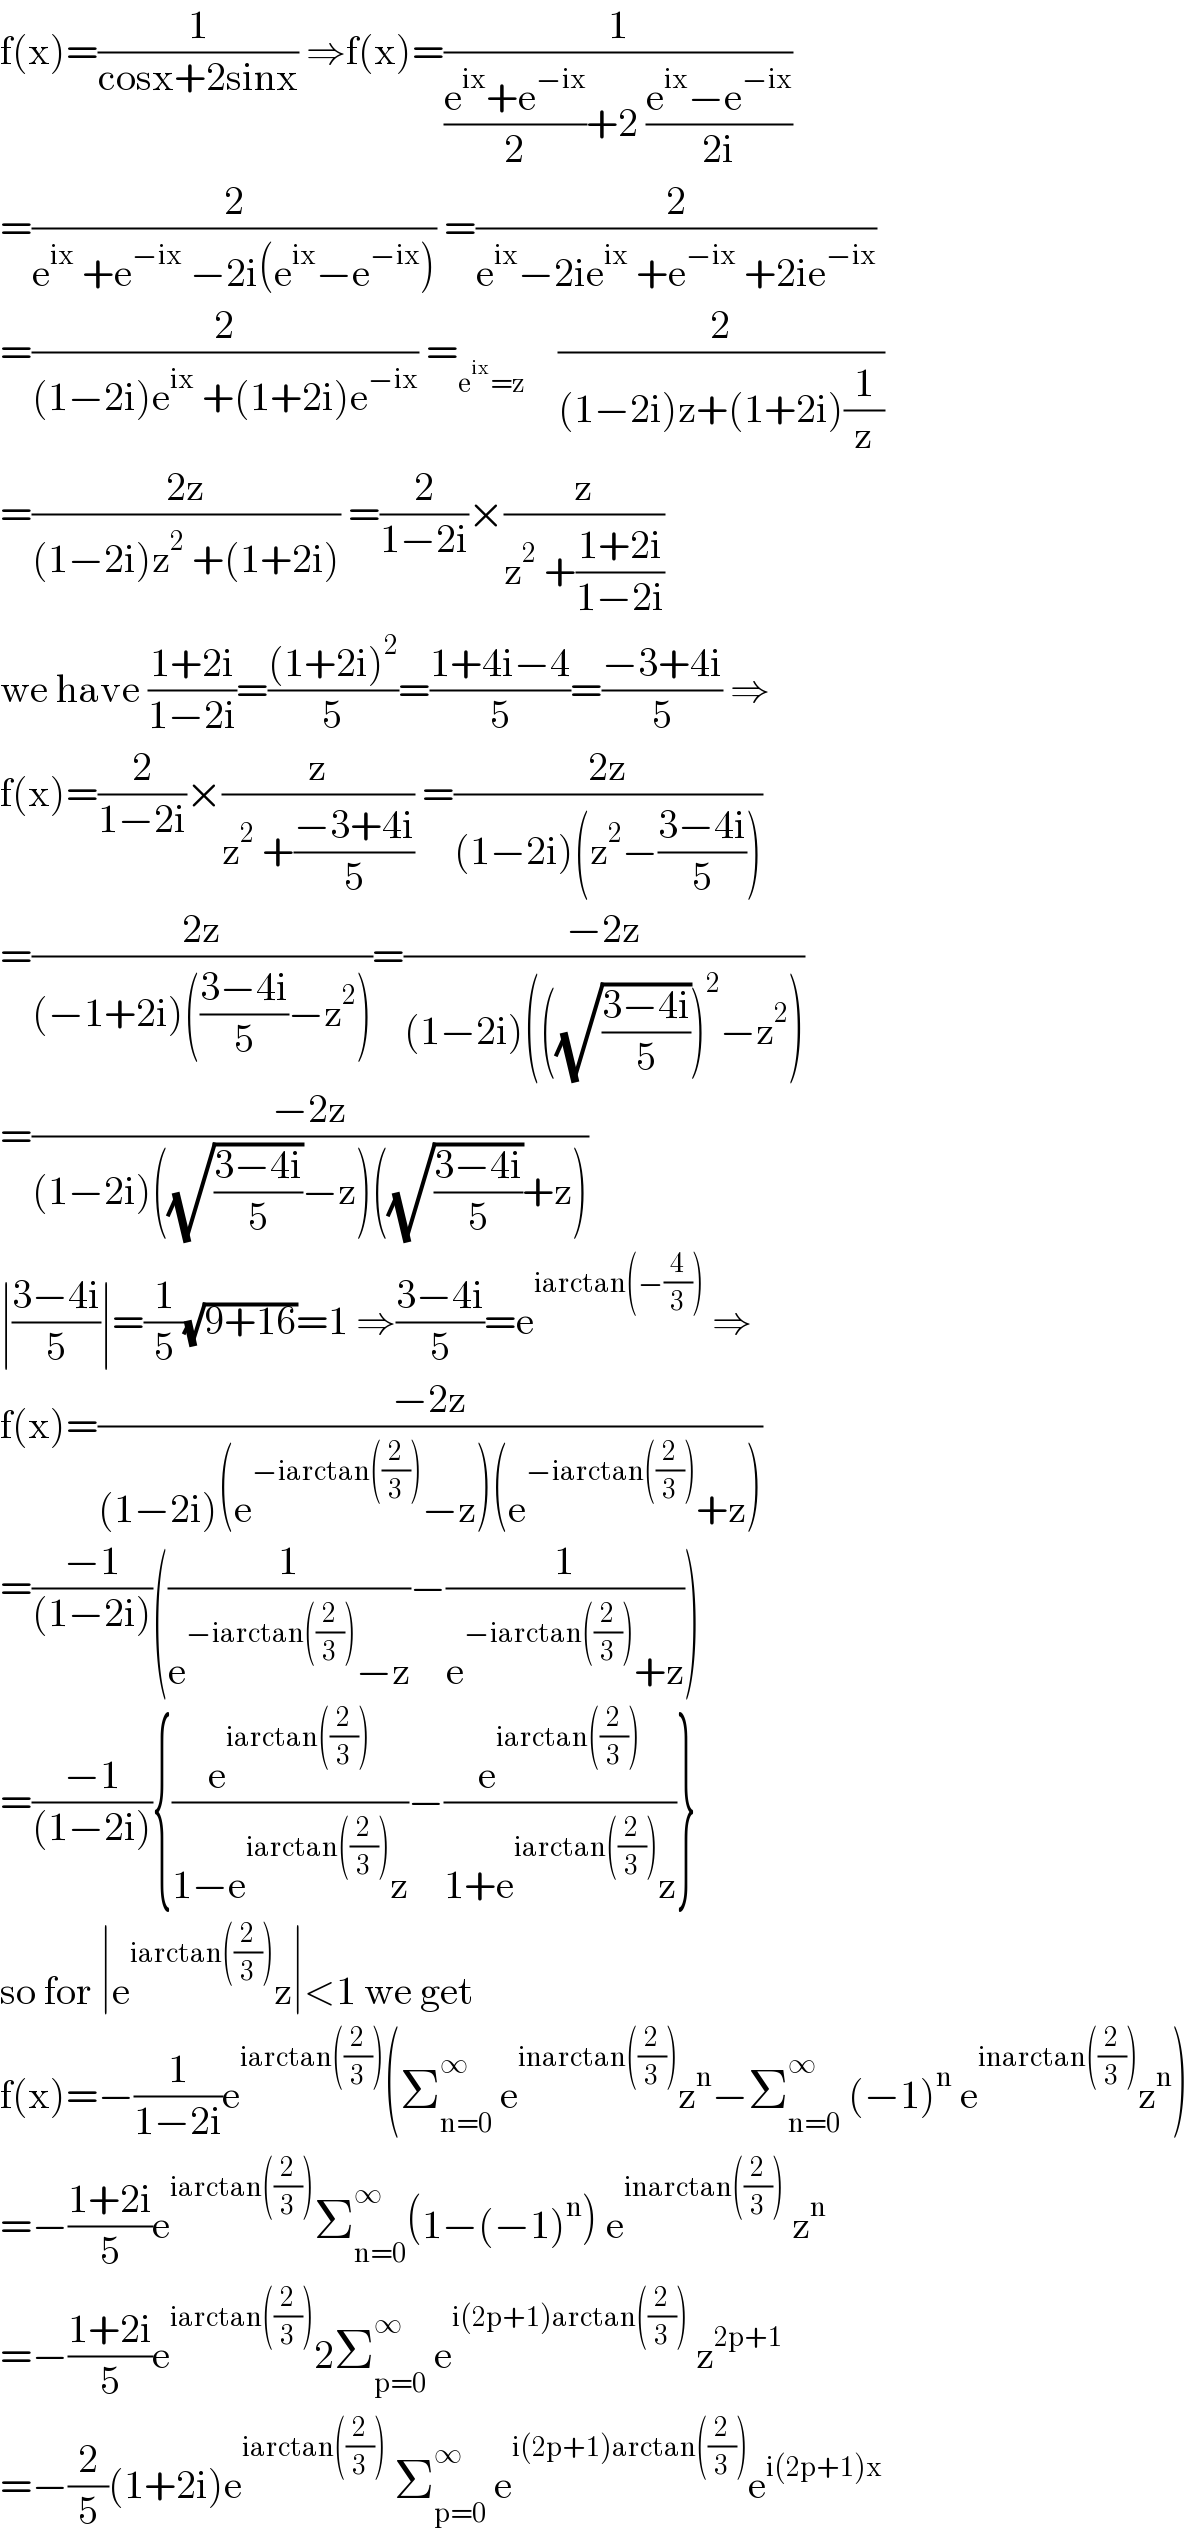 f(x)=(1/(cosx+2sinx)) ⇒f(x)=(1/(((e^(ix) +e^(−ix) )/2)+2 ((e^(ix) −e^(−ix) )/(2i))))  =(2/(e^(ix)  +e^(−ix)  −2i(e^(ix) −e^(−ix) ))) =(2/(e^(ix) −2ie^(ix)  +e^(−ix)  +2ie^(−ix) ))  =(2/((1−2i)e^(ix)  +(1+2i)e^(−ix) )) =_(e^(ix) =z)     (2/((1−2i)z+(1+2i)(1/z)))  =((2z)/((1−2i)z^2  +(1+2i))) =(2/(1−2i))×(z/(z^2  +((1+2i)/(1−2i))))  we have ((1+2i)/(1−2i))=(((1+2i)^2 )/5)=((1+4i−4)/5)=((−3+4i)/5) ⇒  f(x)=(2/(1−2i))×(z/(z^2  +((−3+4i)/5))) =((2z)/((1−2i)(z^2 −((3−4i)/5))))  =((2z)/((−1+2i)(((3−4i)/5)−z^2 )))=((−2z)/((1−2i)(((√((3−4i)/5)))^2 −z^2 )))  =((−2z)/((1−2i)((√((3−4i)/5))−z)((√((3−4i)/5))+z)))  ∣((3−4i)/5)∣=(1/5)(√(9+16))=1 ⇒((3−4i)/5)=e^(iarctan(−(4/3)))  ⇒  f(x)=((−2z)/((1−2i)(e^(−iarctan((2/3))) −z)(e^(−iarctan((2/3))) +z)))  =((−1)/((1−2i)))((1/(e^(−iarctan((2/3))) −z))−(1/(e^(−iarctan((2/3))) +z)))  =((−1)/((1−2i))){(e^(iarctan((2/3))) /(1−e^(iarctan((2/3))) z))−(e^(iarctan((2/3))) /(1+e^(iarctan((2/3))) z))}  so for ∣e^(iarctan((2/3))) z∣<1 we get  f(x)=−(1/(1−2i))e^(iarctan((2/3))) (Σ_(n=0) ^∞  e^(inarctan((2/3))) z^n −Σ_(n=0) ^∞  (−1)^n  e^(inarctan((2/3))) z^n )  =−((1+2i)/5)e^(iarctan((2/3))) Σ_(n=0) ^∞ (1−(−1)^n ) e^(inarctan((2/3)))  z^n   =−((1+2i)/5)e^(iarctan((2/3))) 2Σ_(p=0) ^∞  e^(i(2p+1)arctan((2/3)))  z^(2p+1)   =−(2/5)(1+2i)e^(iarctan((2/3)))  Σ_(p=0) ^∞  e^(i(2p+1)arctan((2/3))) e^(i(2p+1)x)   